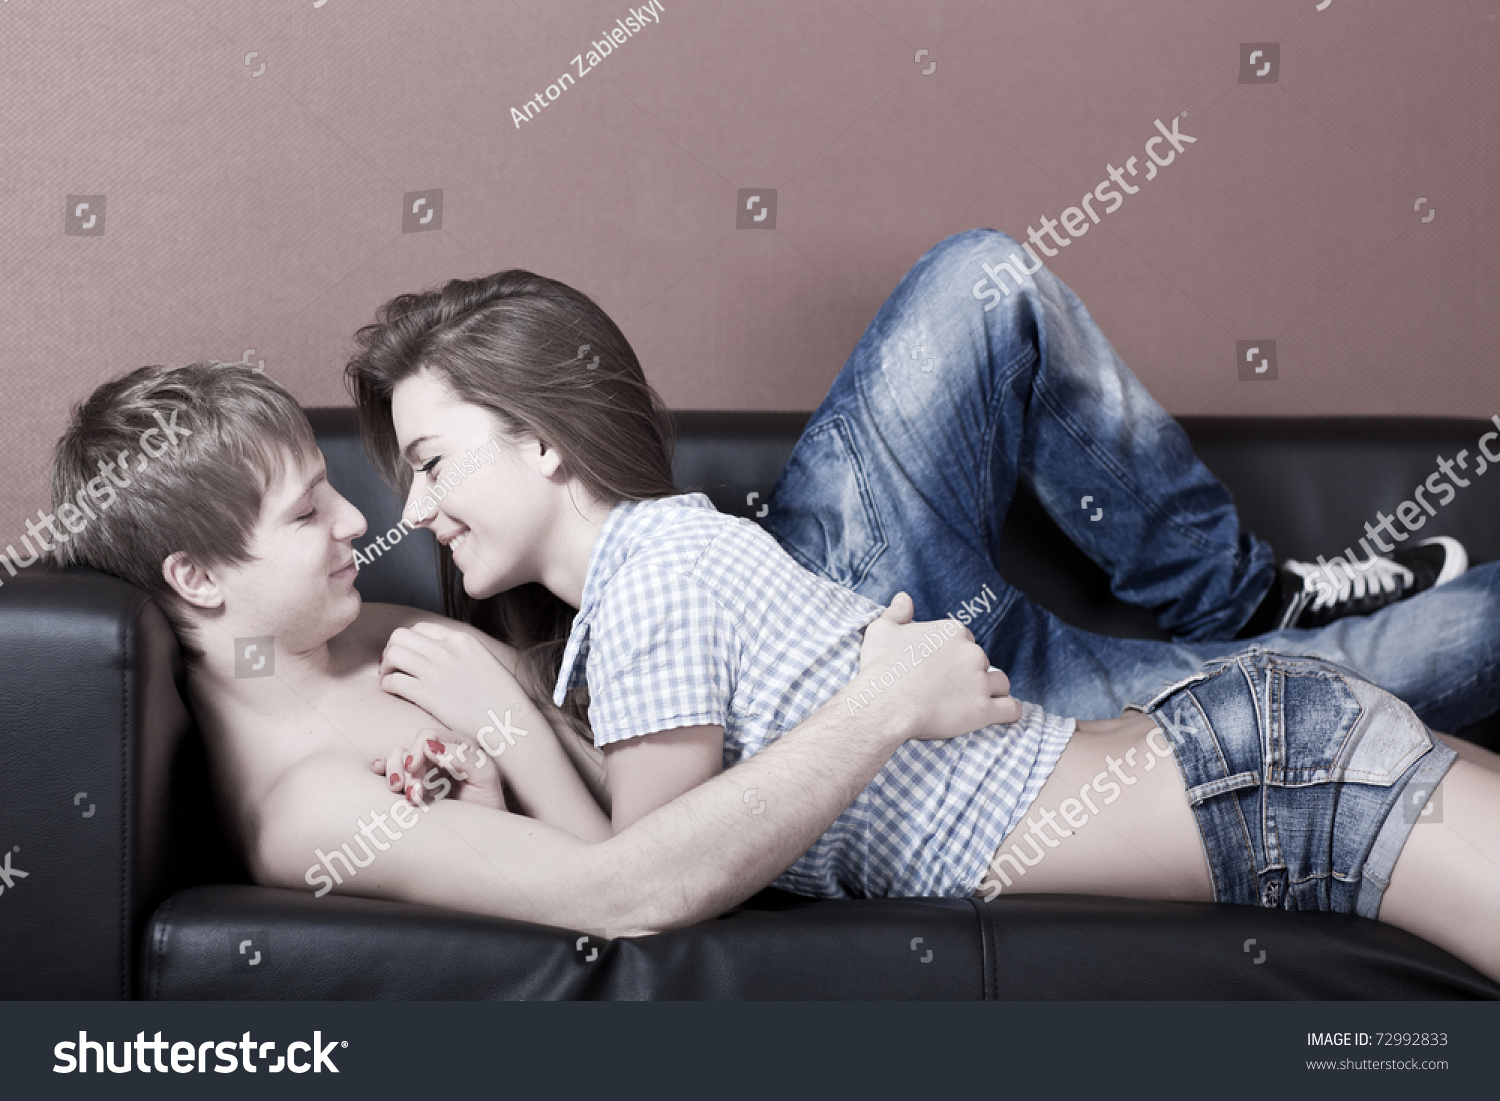 Две голые стриптизерши с длинными ножками эротично целуются на диванчике